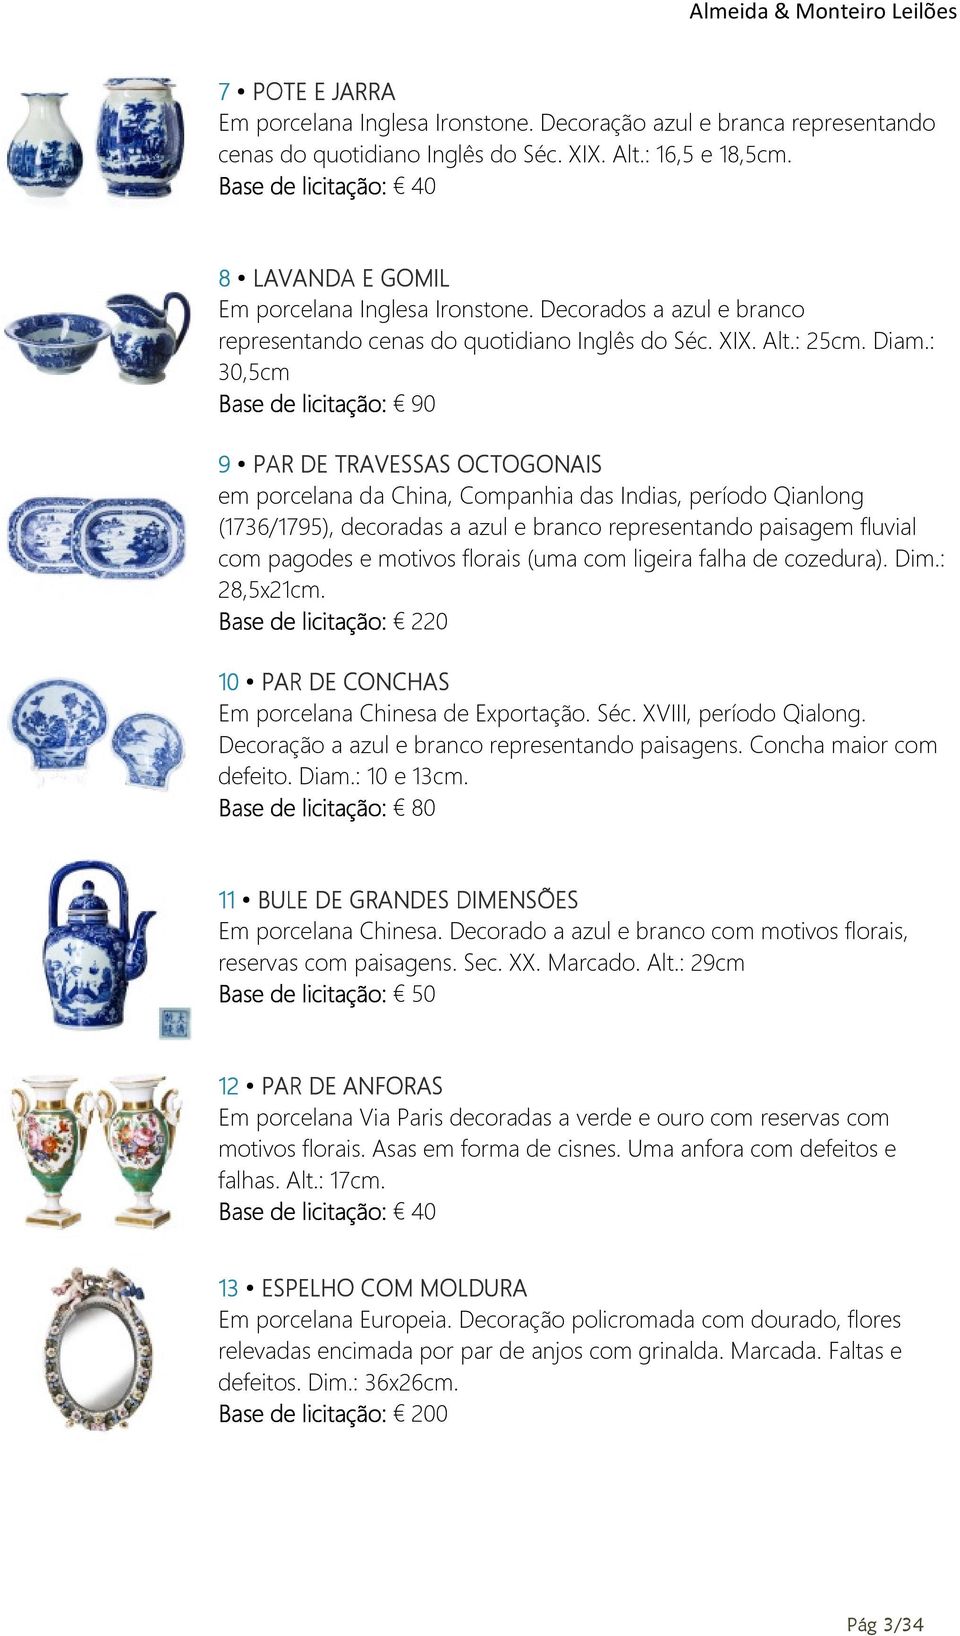 : 30,5cm Base de licitação: 90 9 PAR DE TRAVESSAS OCTOGONAIS em porcelana da China, Companhia das Indias, período Qianlong (1736/1795), decoradas a azul e branco representando paisagem fluvial com